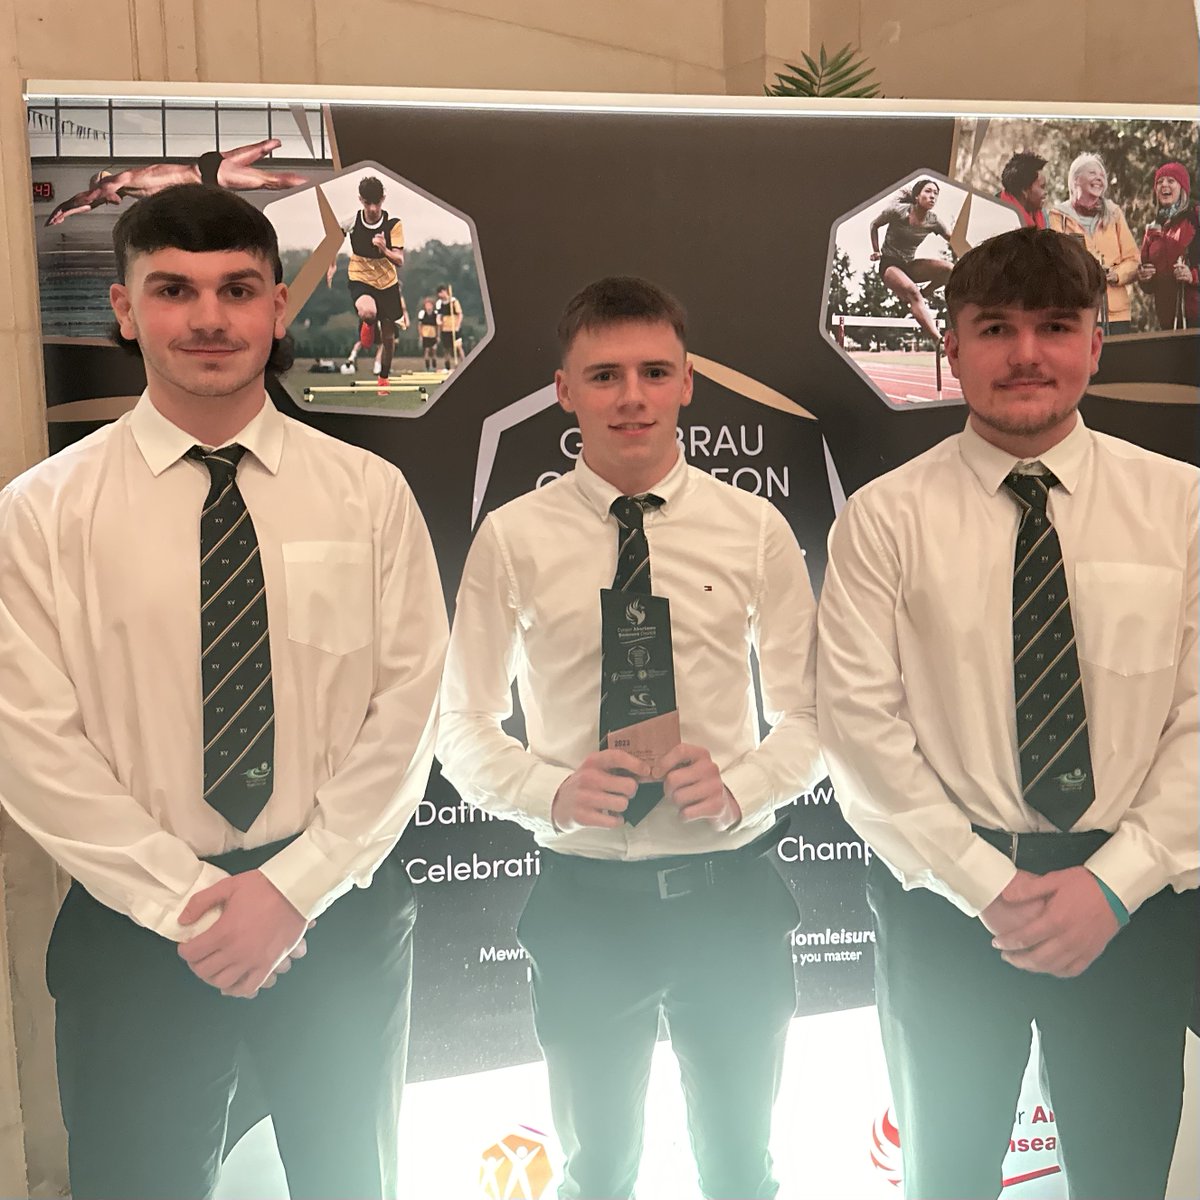 The winners of School Team of the Year sponsored by @GowerCollegeSwa are Ysgol Gyfun Gwyr Senior Rugby Team 🎉